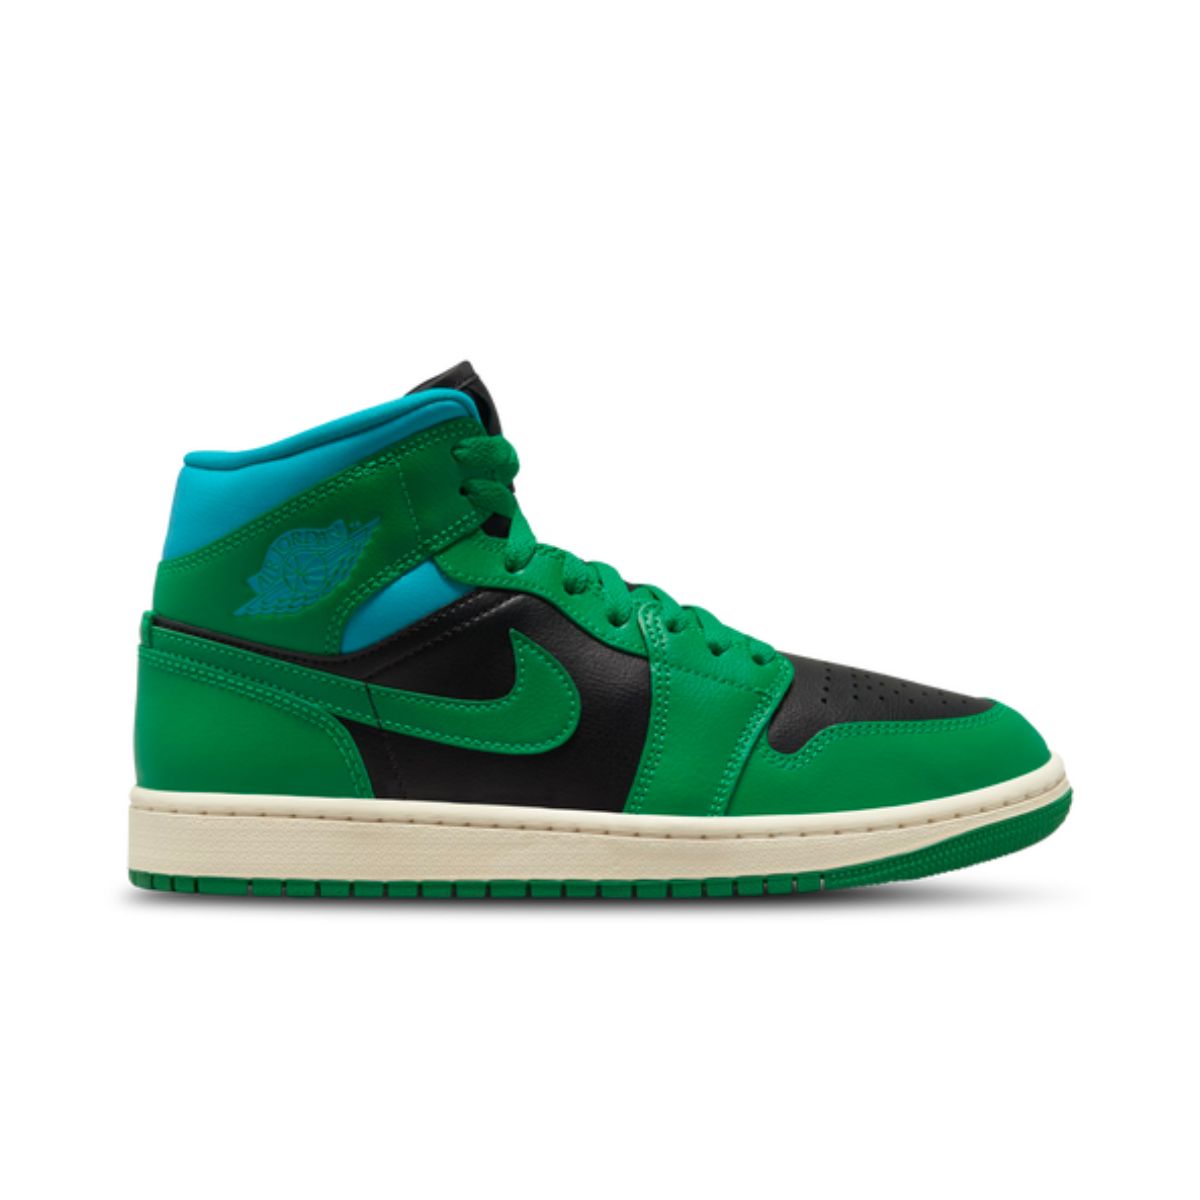 Green Jordans Replacement Shoelaces - Kicks Shoelaces